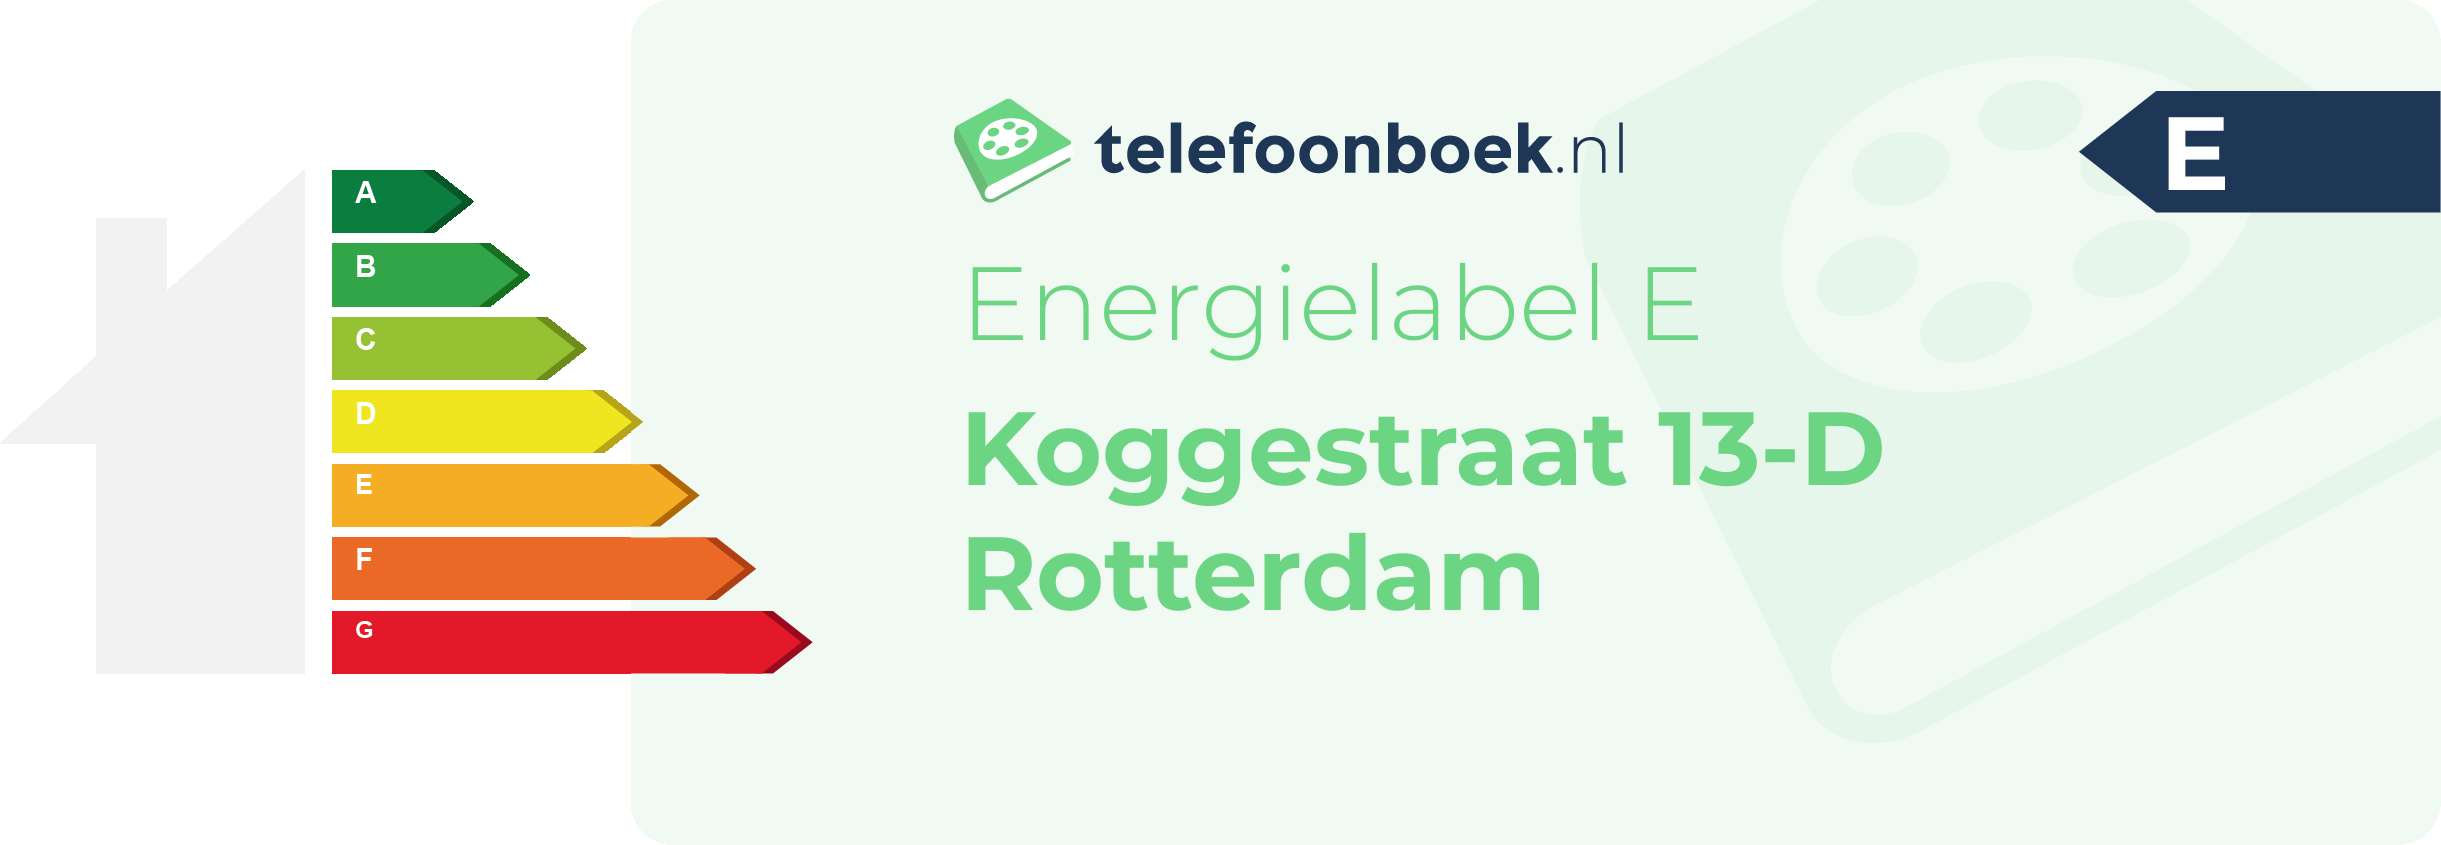 Energielabel Koggestraat 13-D Rotterdam